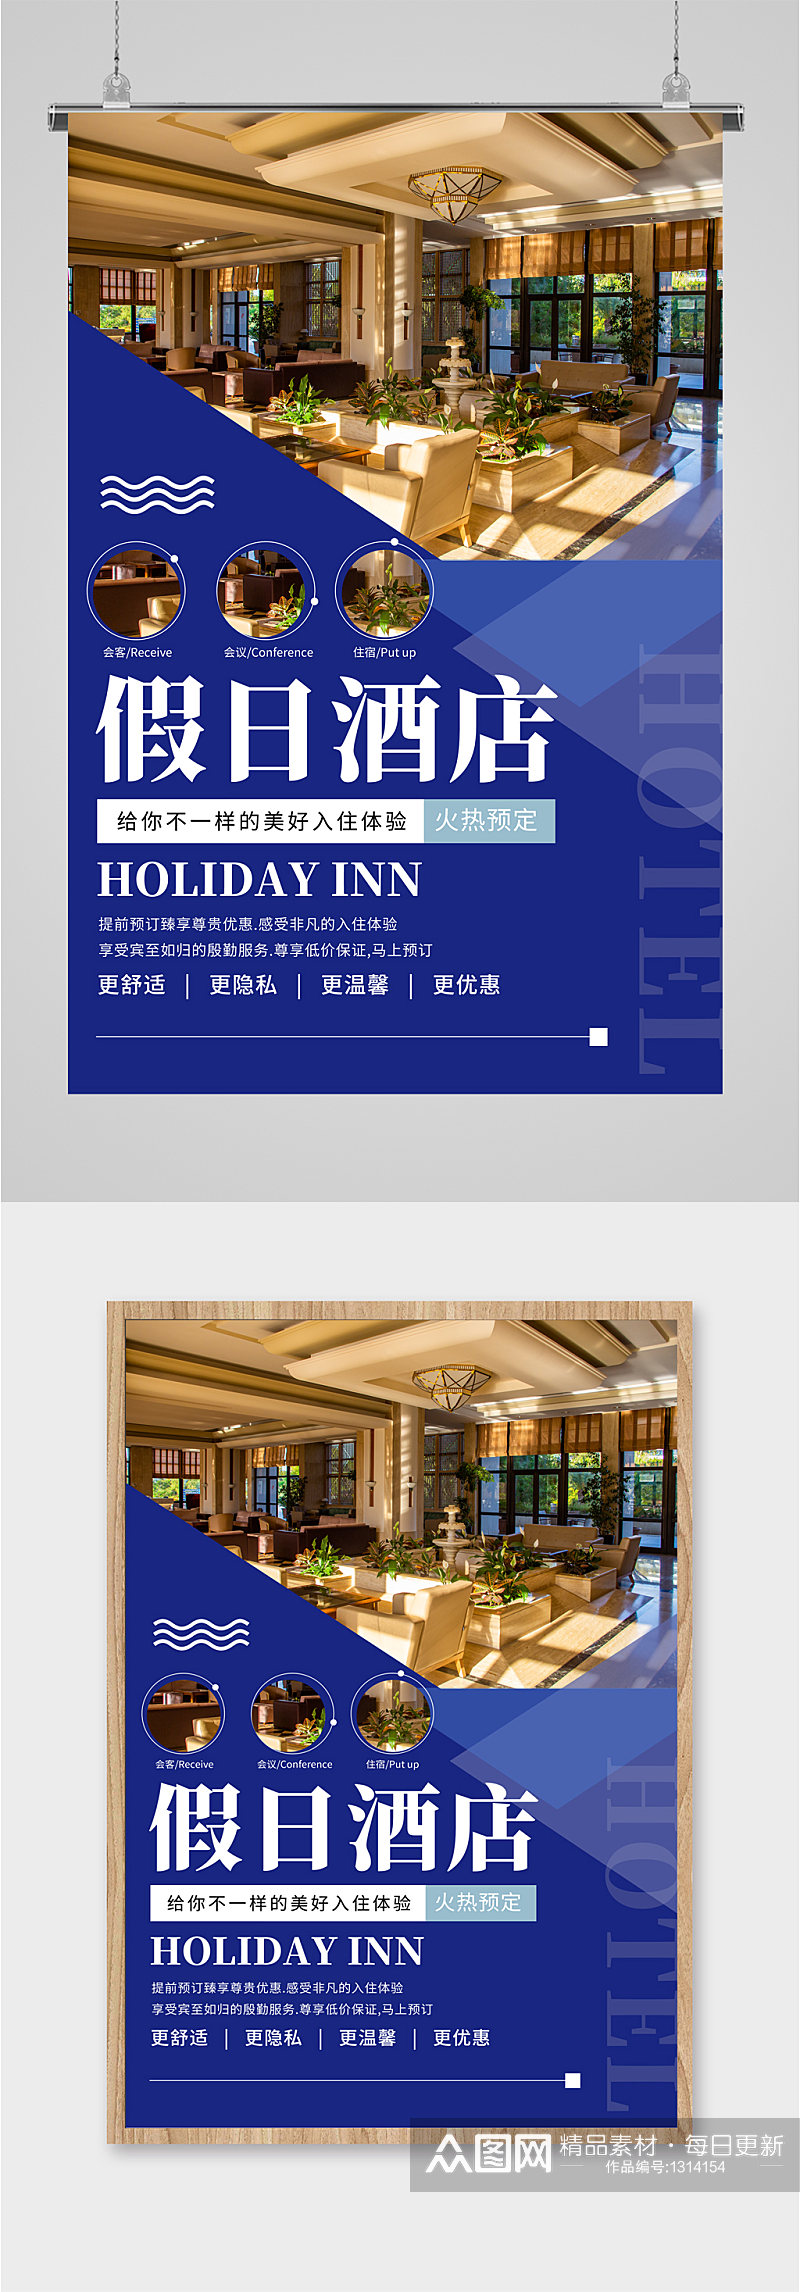 民宿假日酒店宣传海报素材